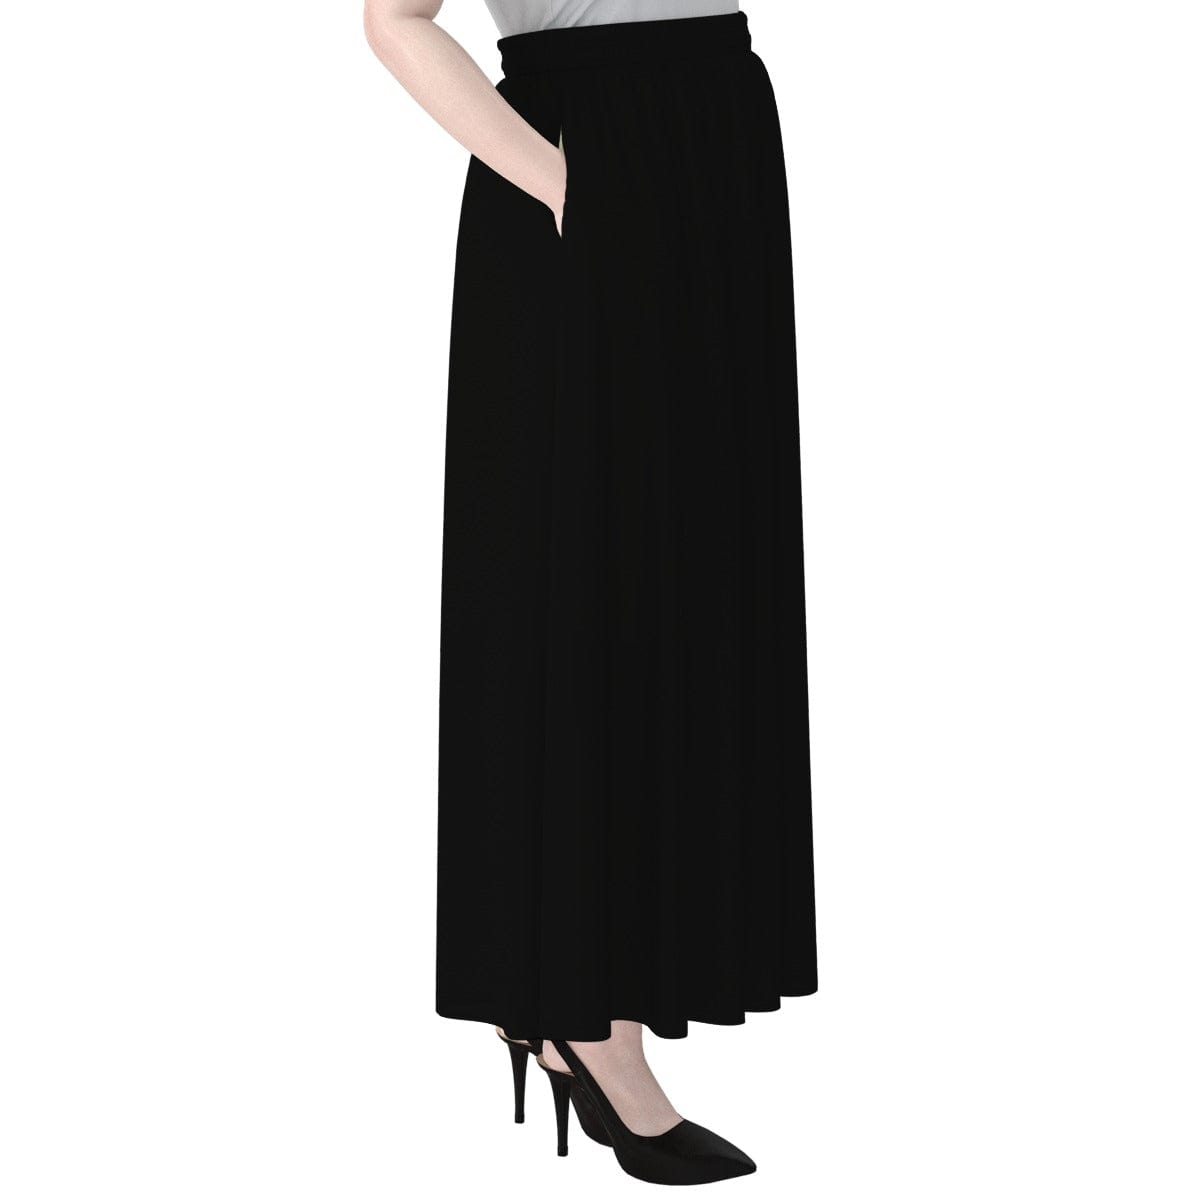 Yoycol Jet Black - Women's Maxi Chiffon Skirts With Lining